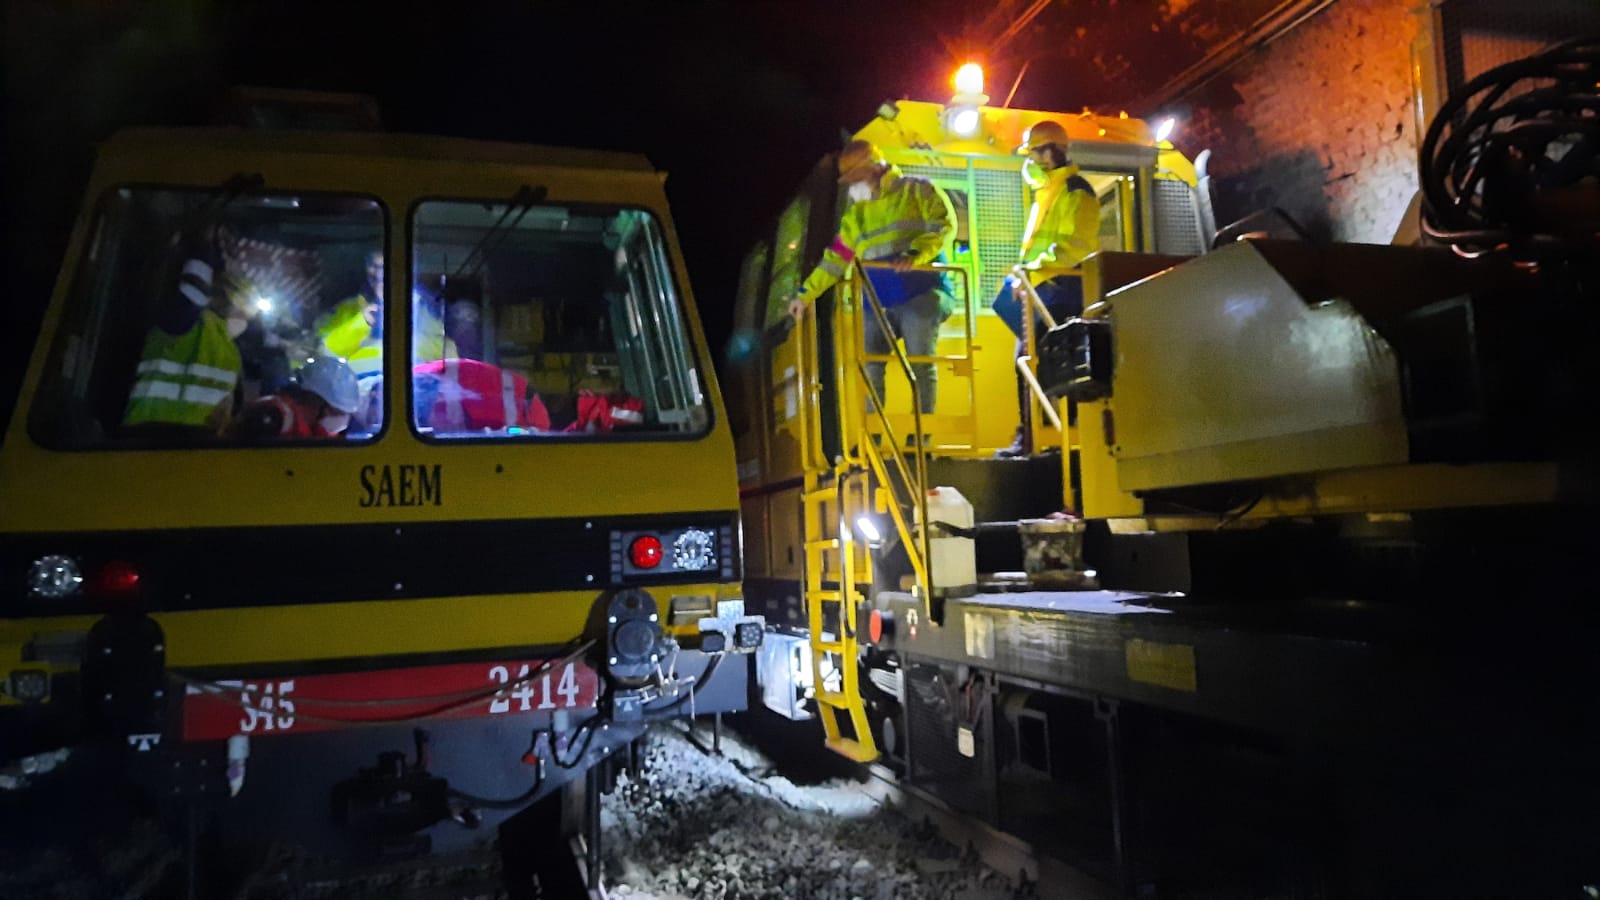 Ferrovia Genova-Ovada-Acqui Terme, soccorso ad un manutentore ferito ma è solo un'esercitazione